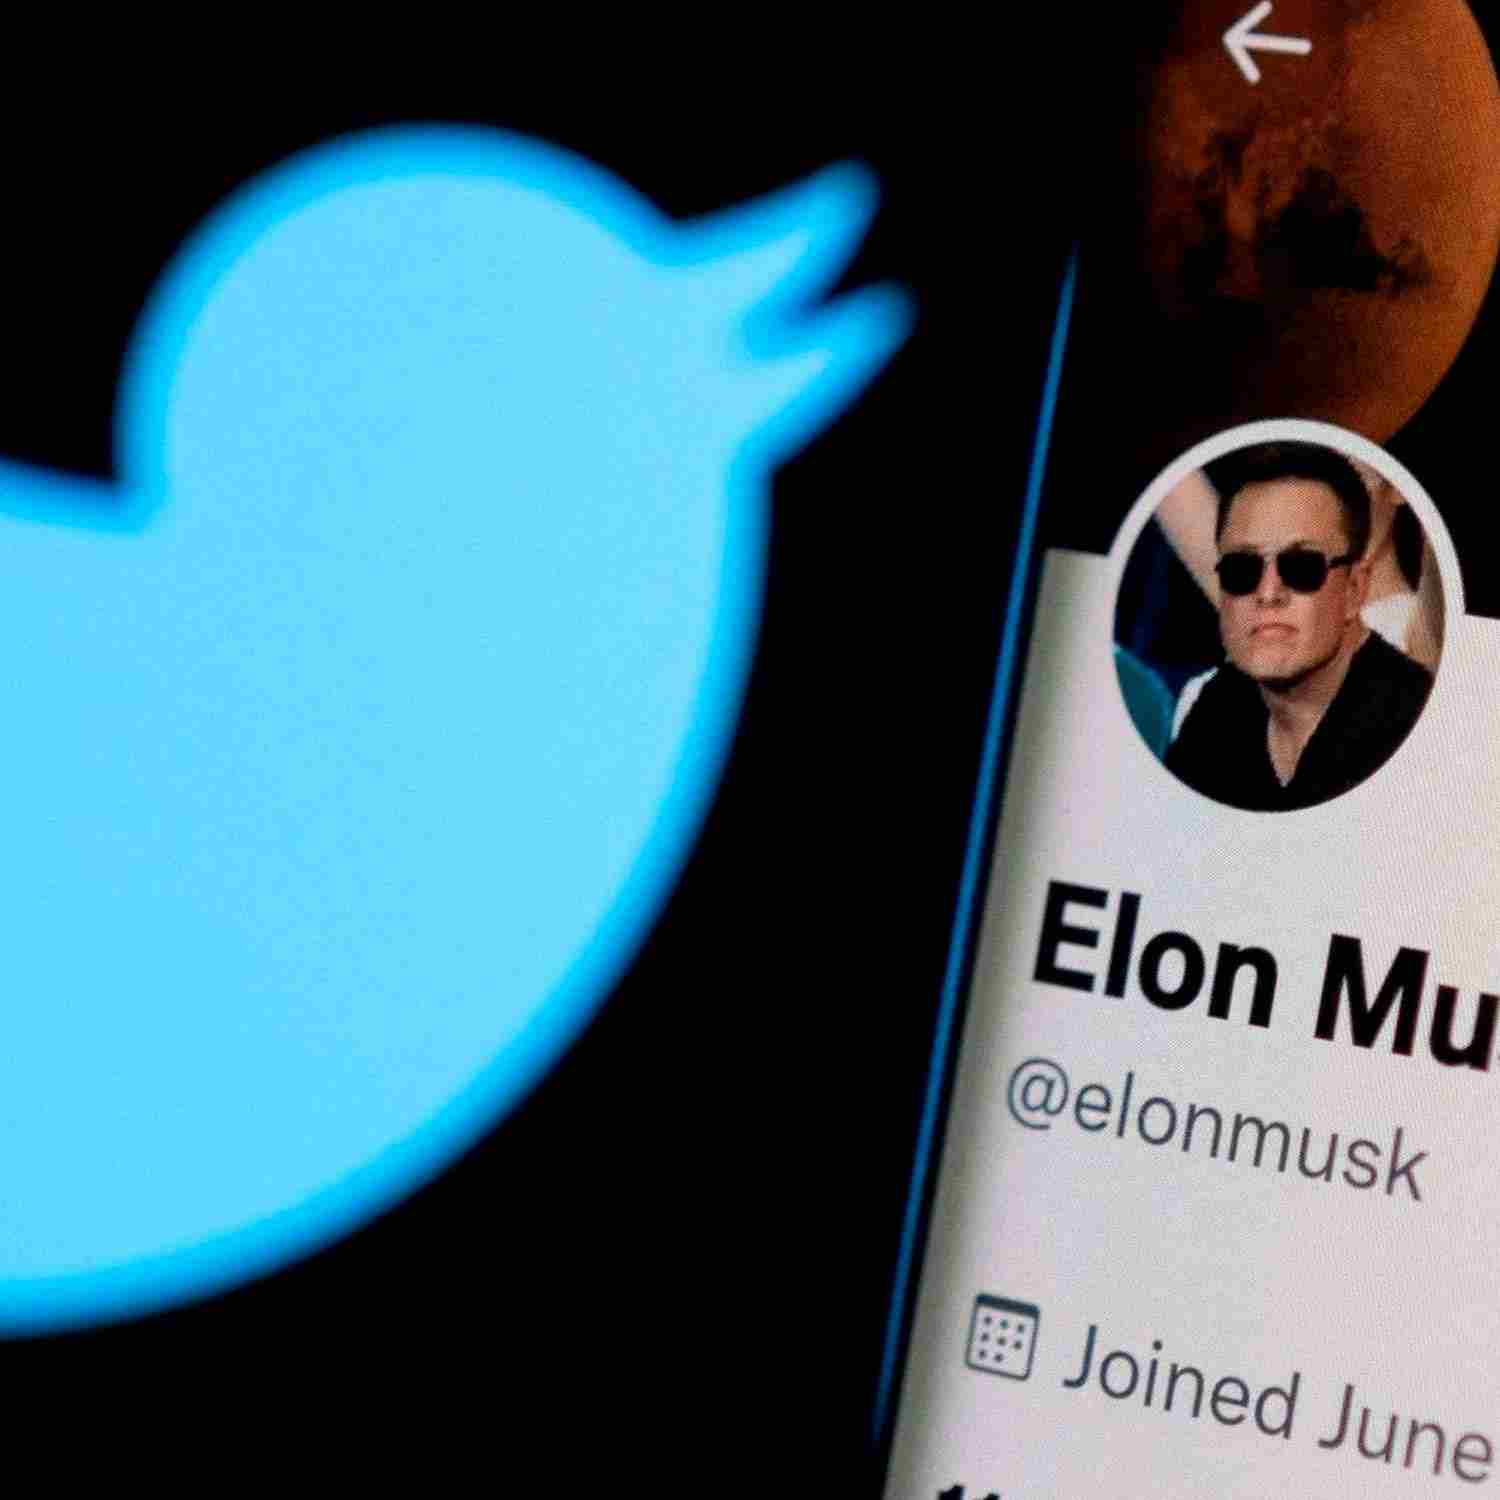 Gerente de Twitter recurrió a poder judicial de Irlanda para evitar ser despedida por Musk